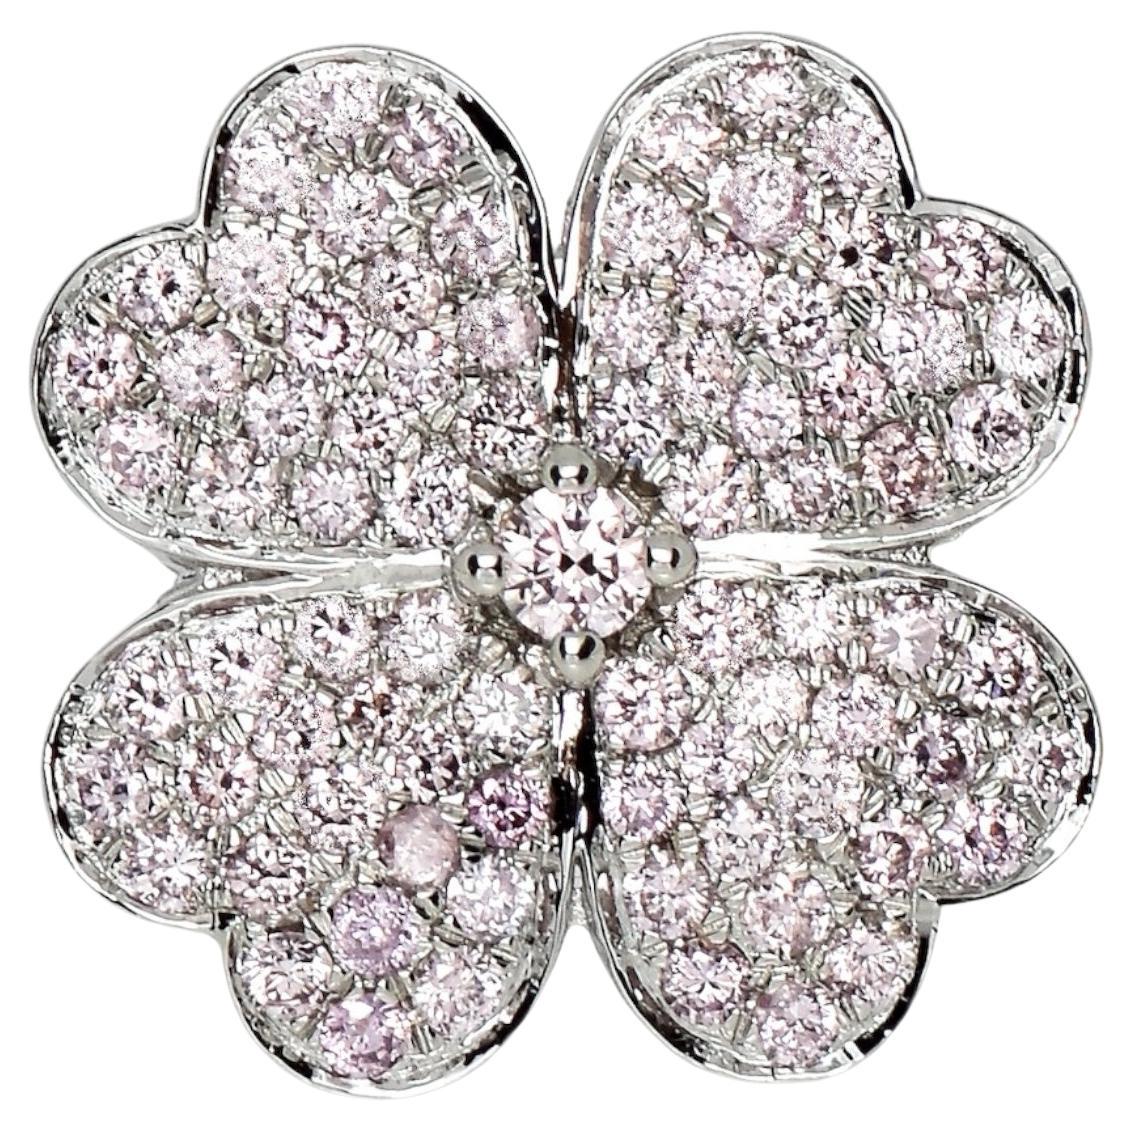 IGI 14K 0,97 Karat natürliche rosa Diamanten Glücks Kleeblatt Antiker Design Ring